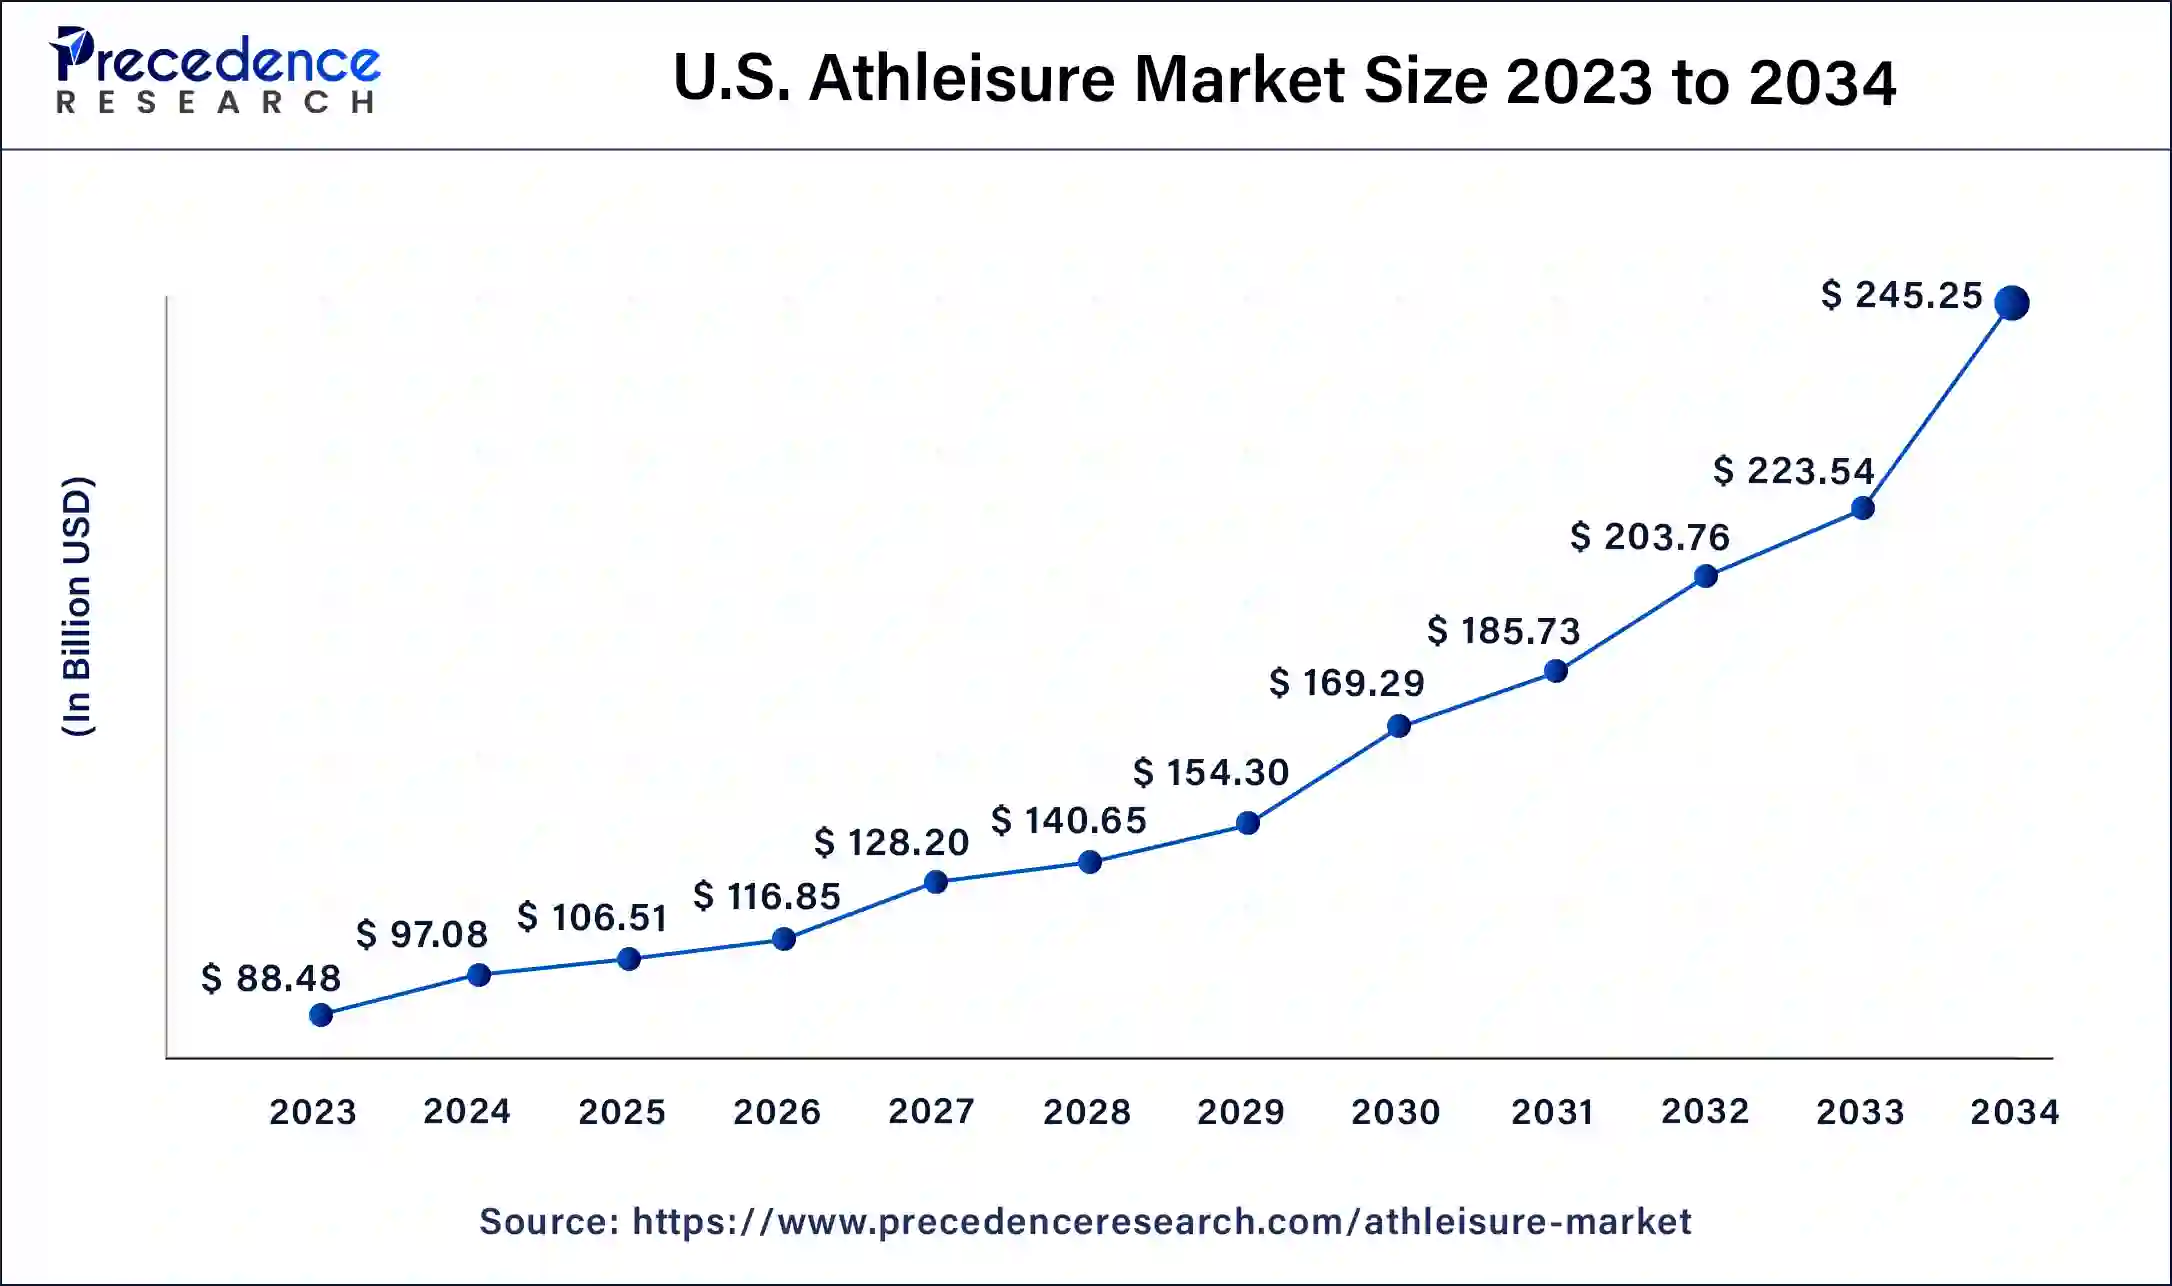 U.S. Athleisure Market Size 2024 to 2034